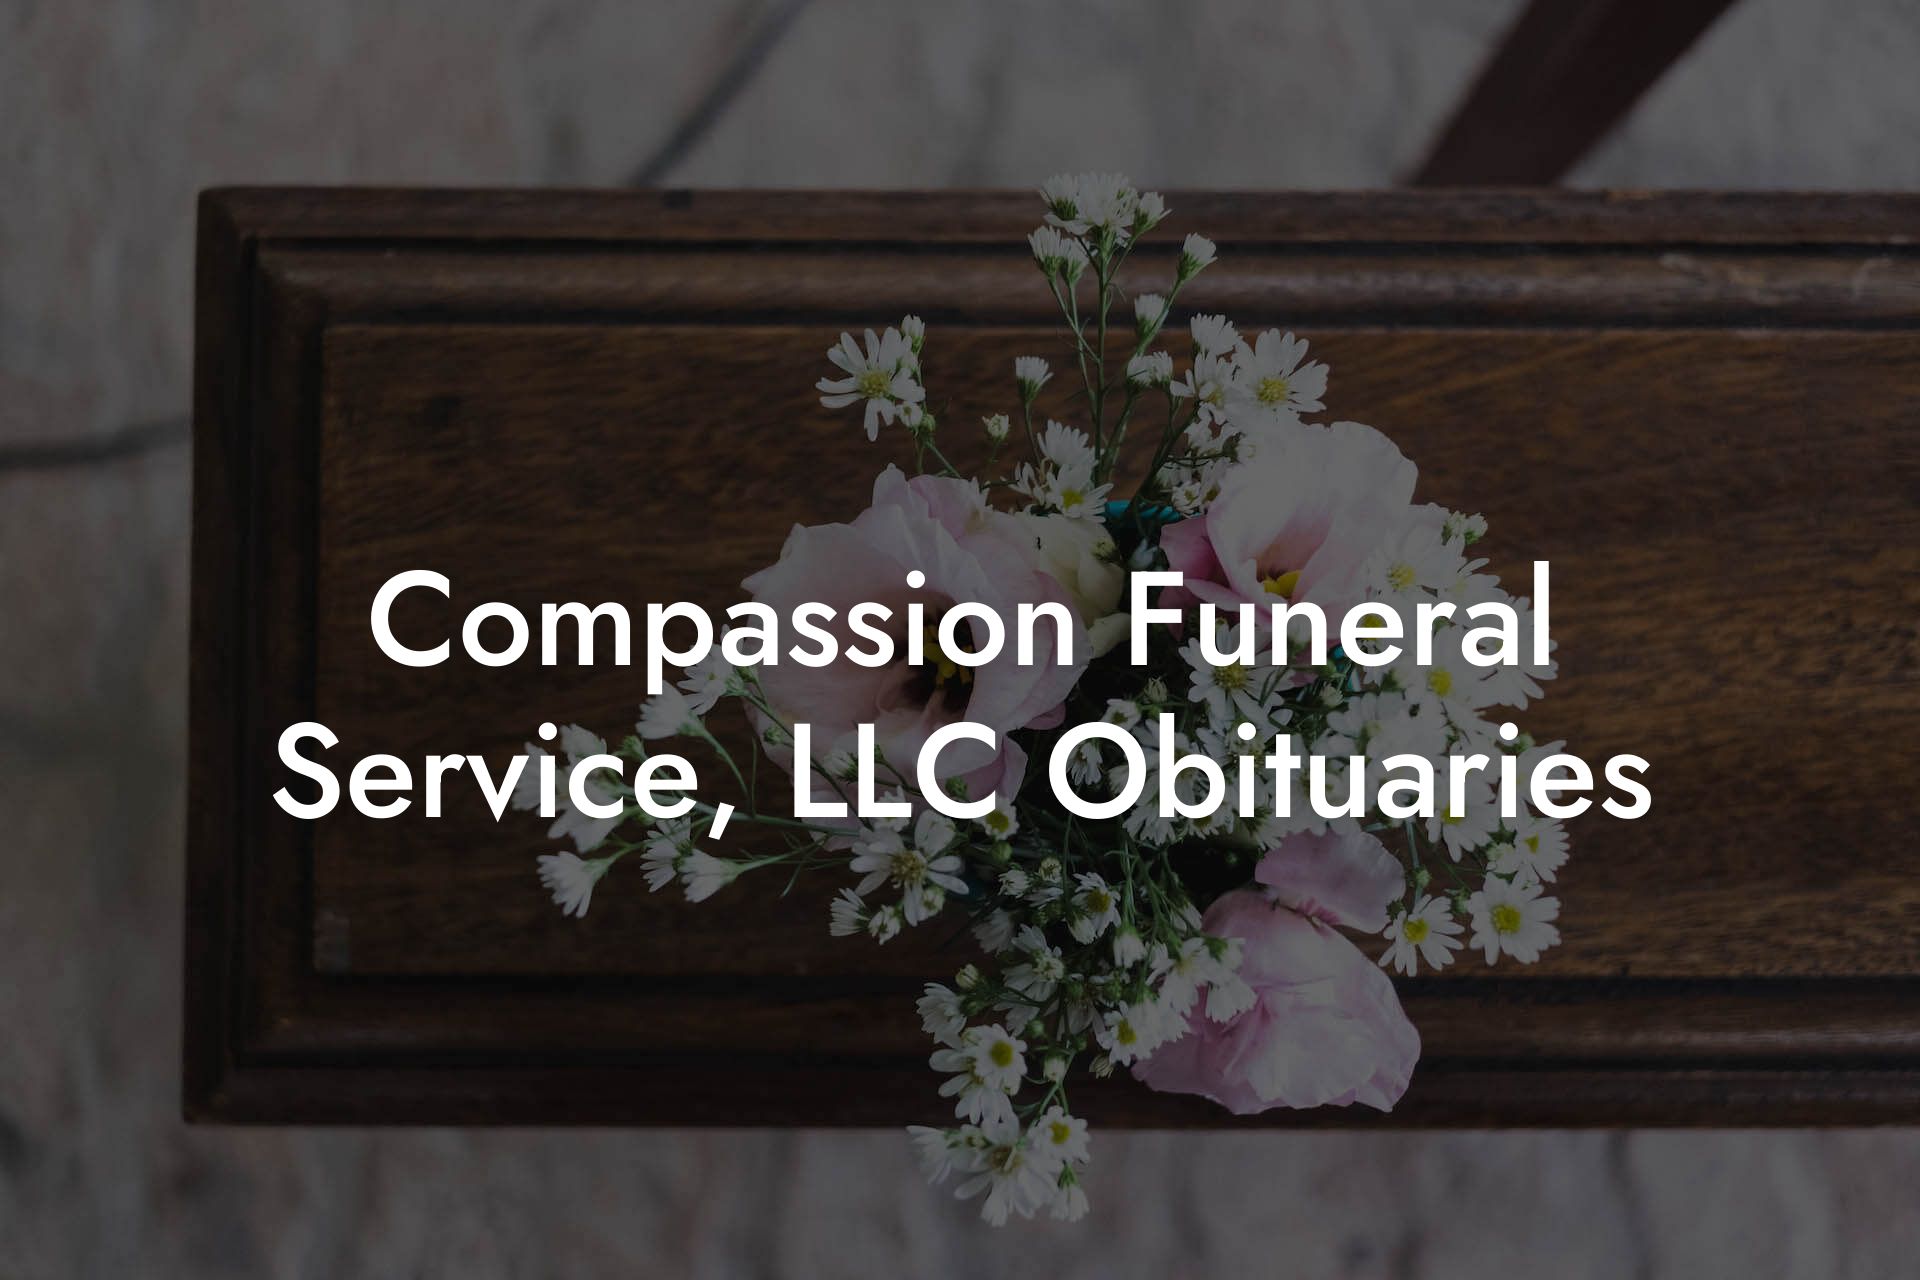 Compassion Funeral Service, LLC Obituaries